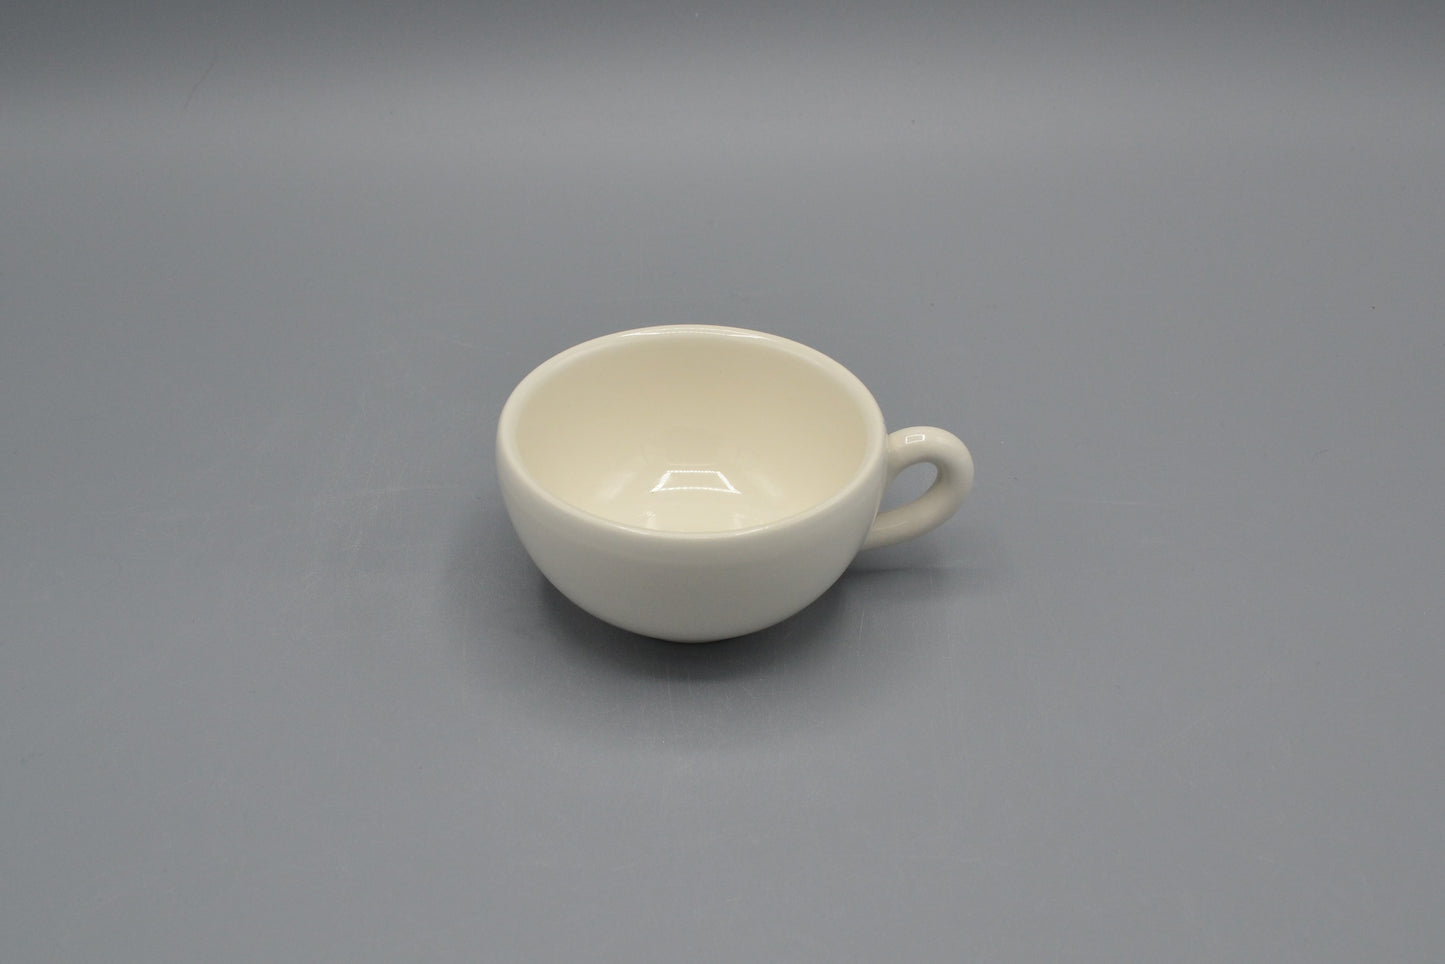 Tazza caffè Mughetto in ceramica LUCIDA cristallinata